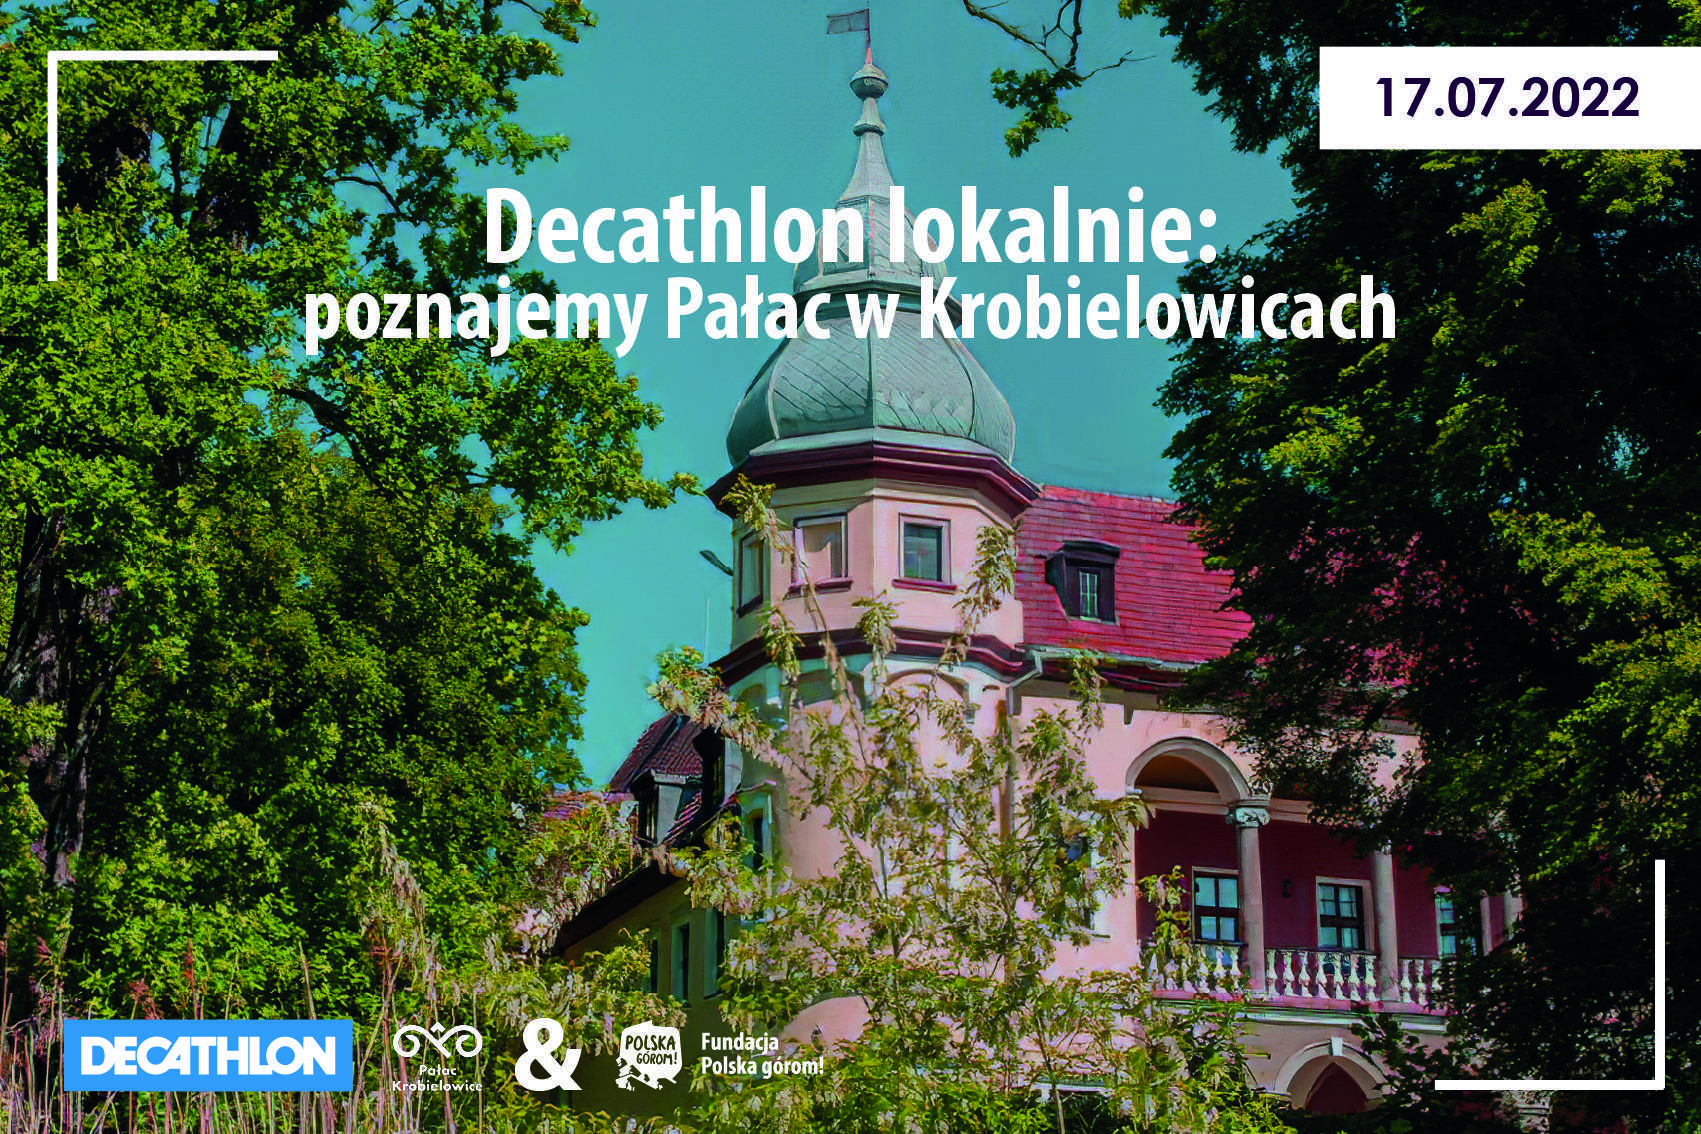 Decathlon lokalnie - Krobielowice